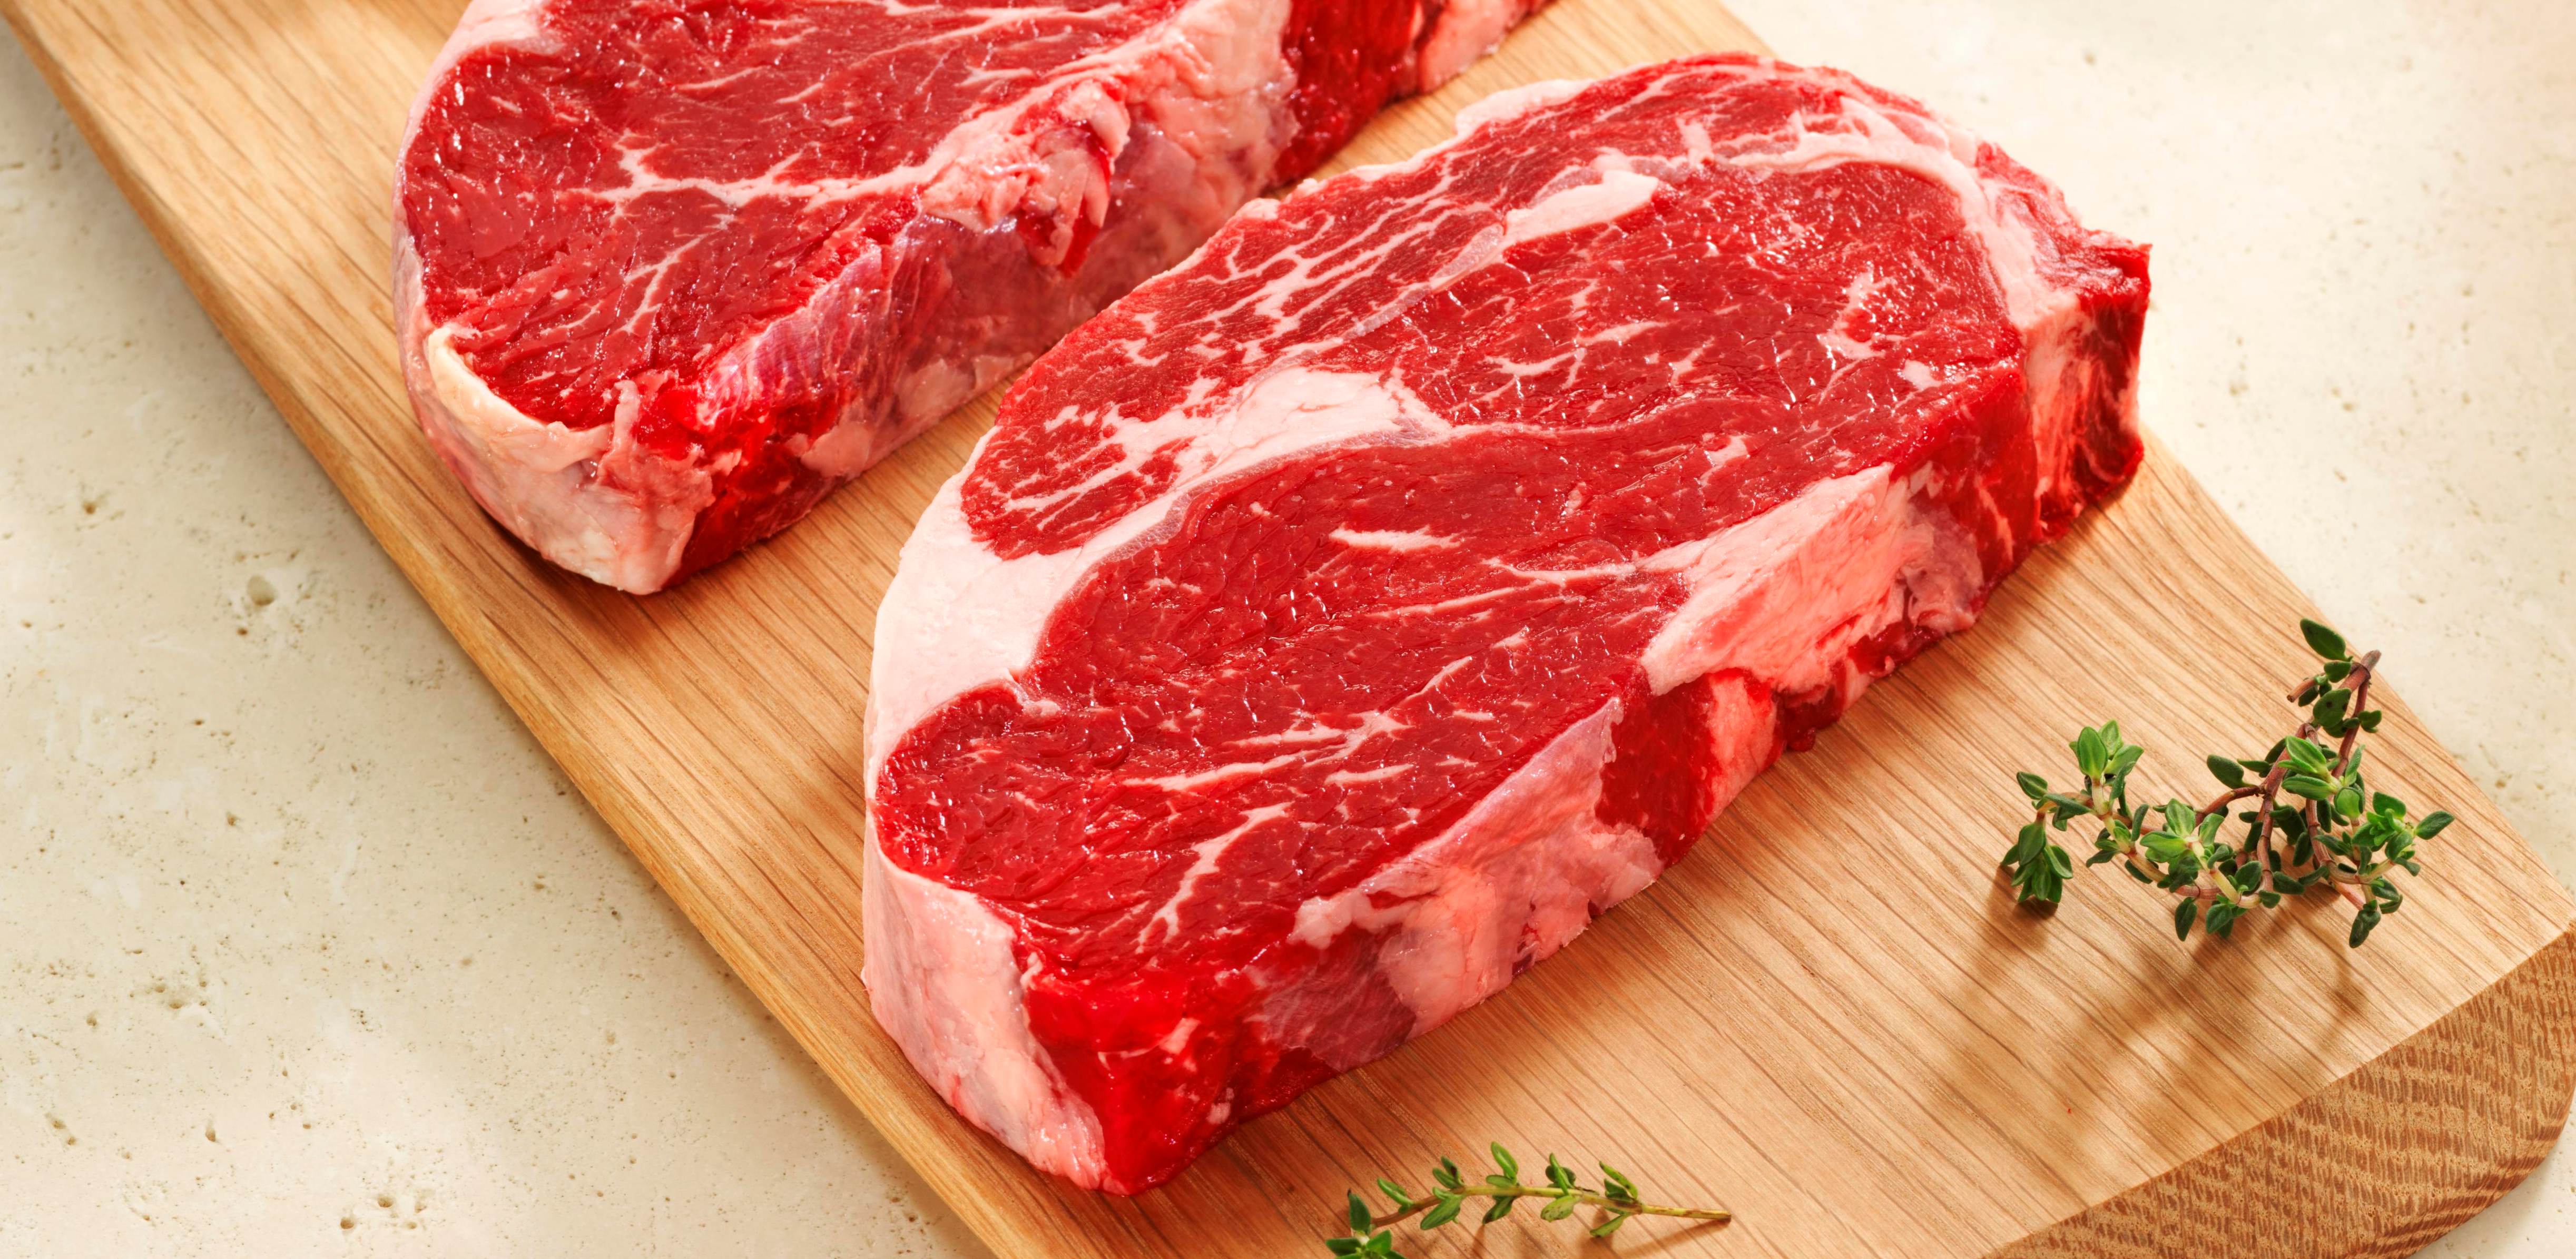 Tỷ lệ mắc bệnh và tử vong do khuẩn salmonella nhiễm trong thịt bò là khá cao